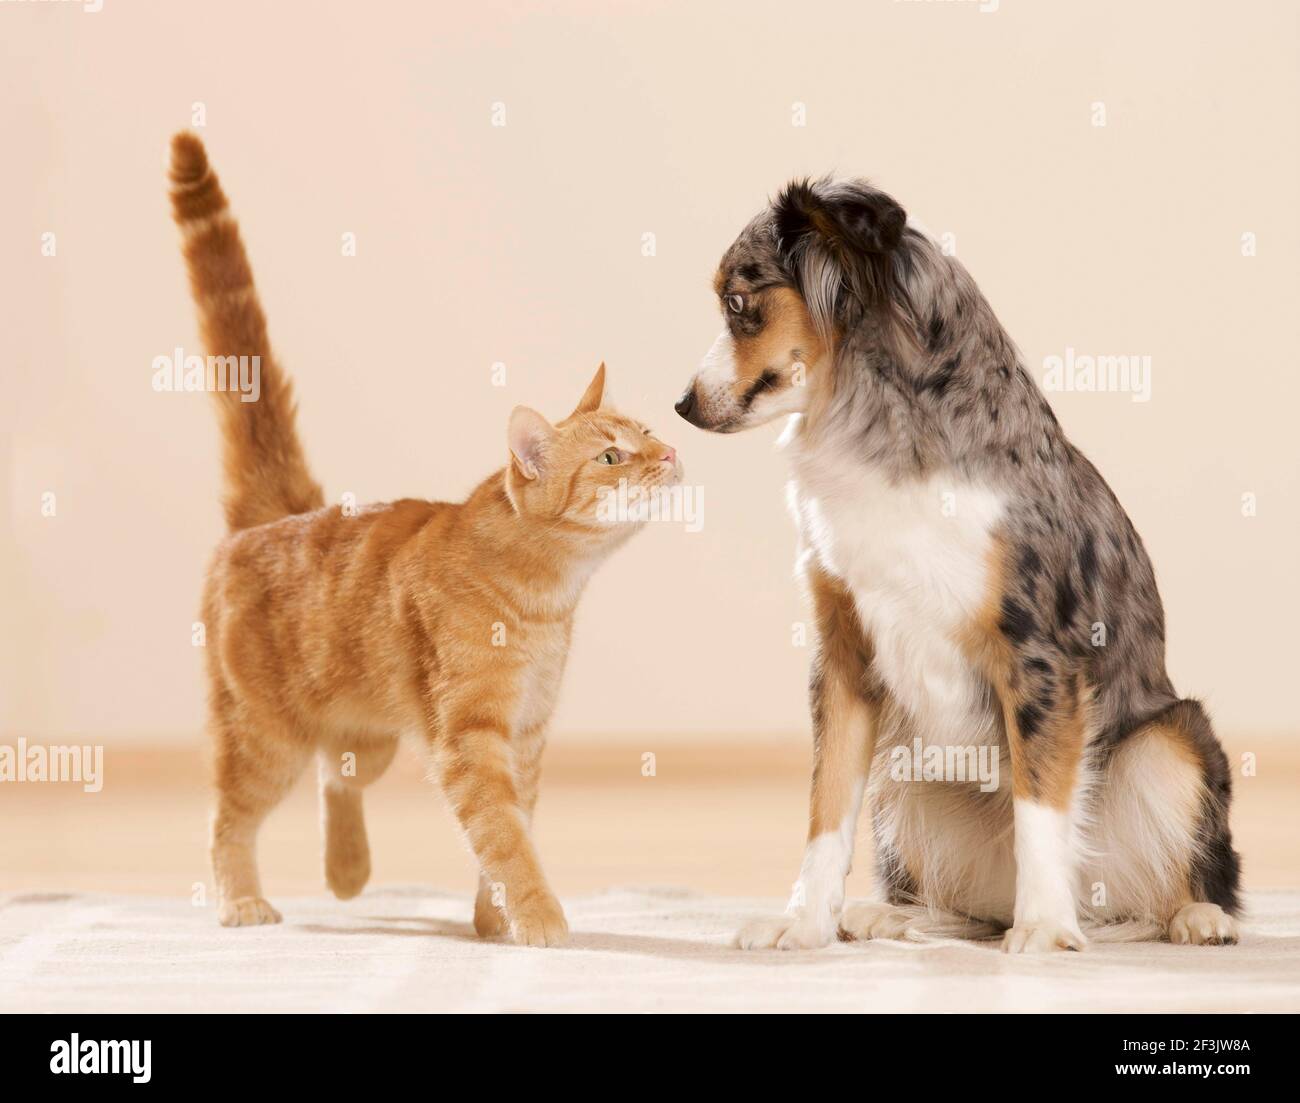 Mini Pastor Australiano y gato doméstico. Un perro adulto y un gato tabby se conocen entre sí. Alemania Foto de stock